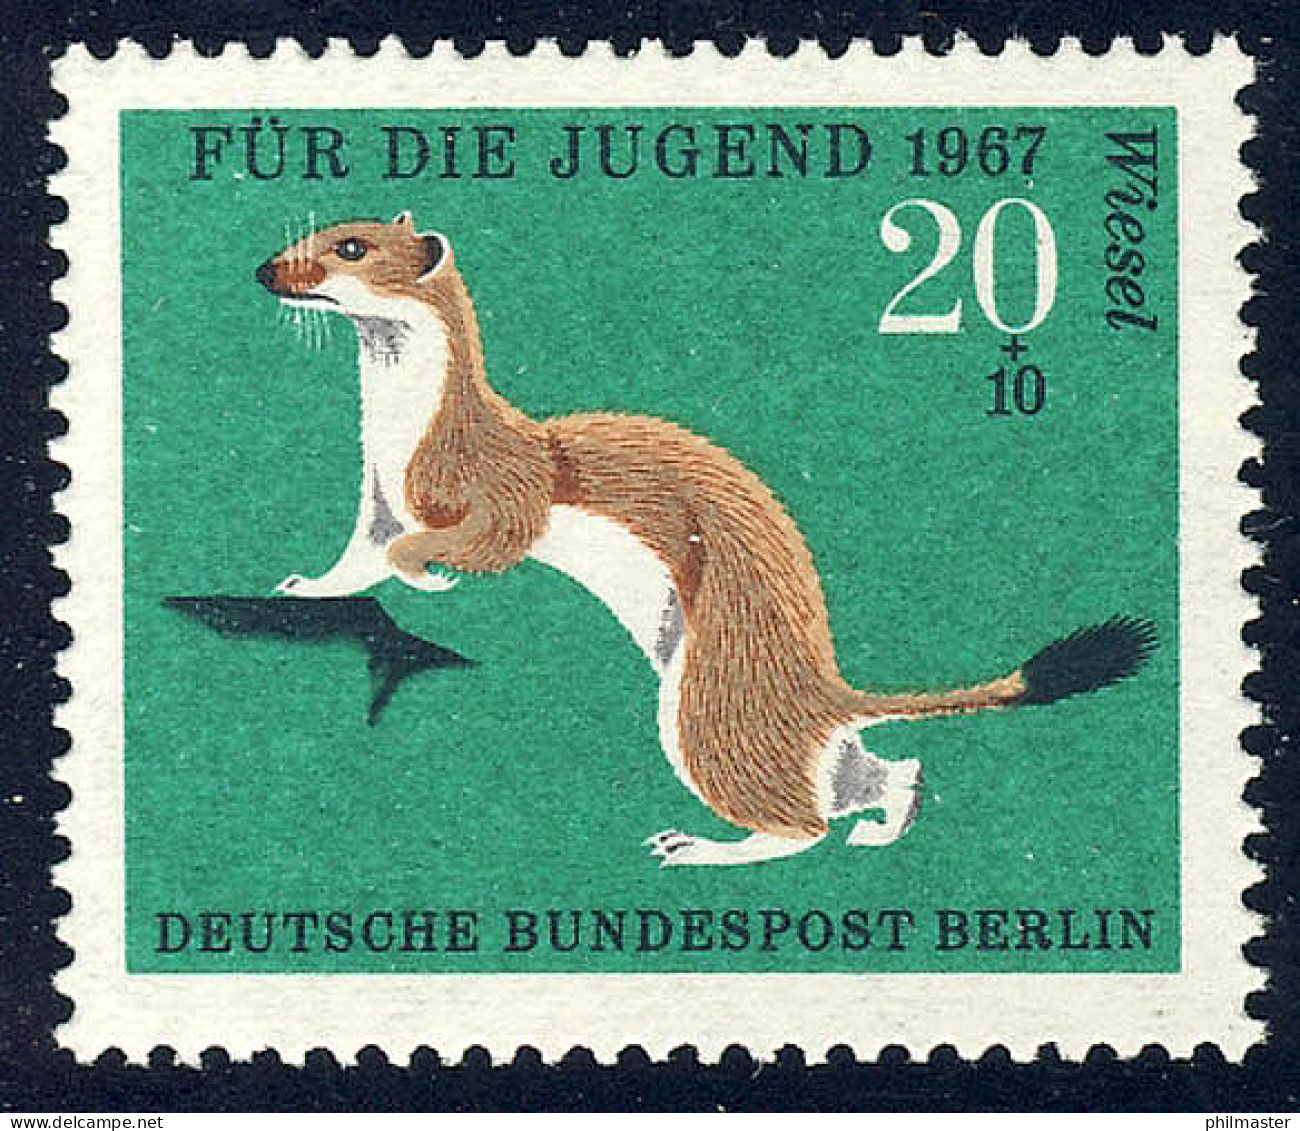 300 Pelztiere Hermelin 20+10 Pf ** - Unused Stamps